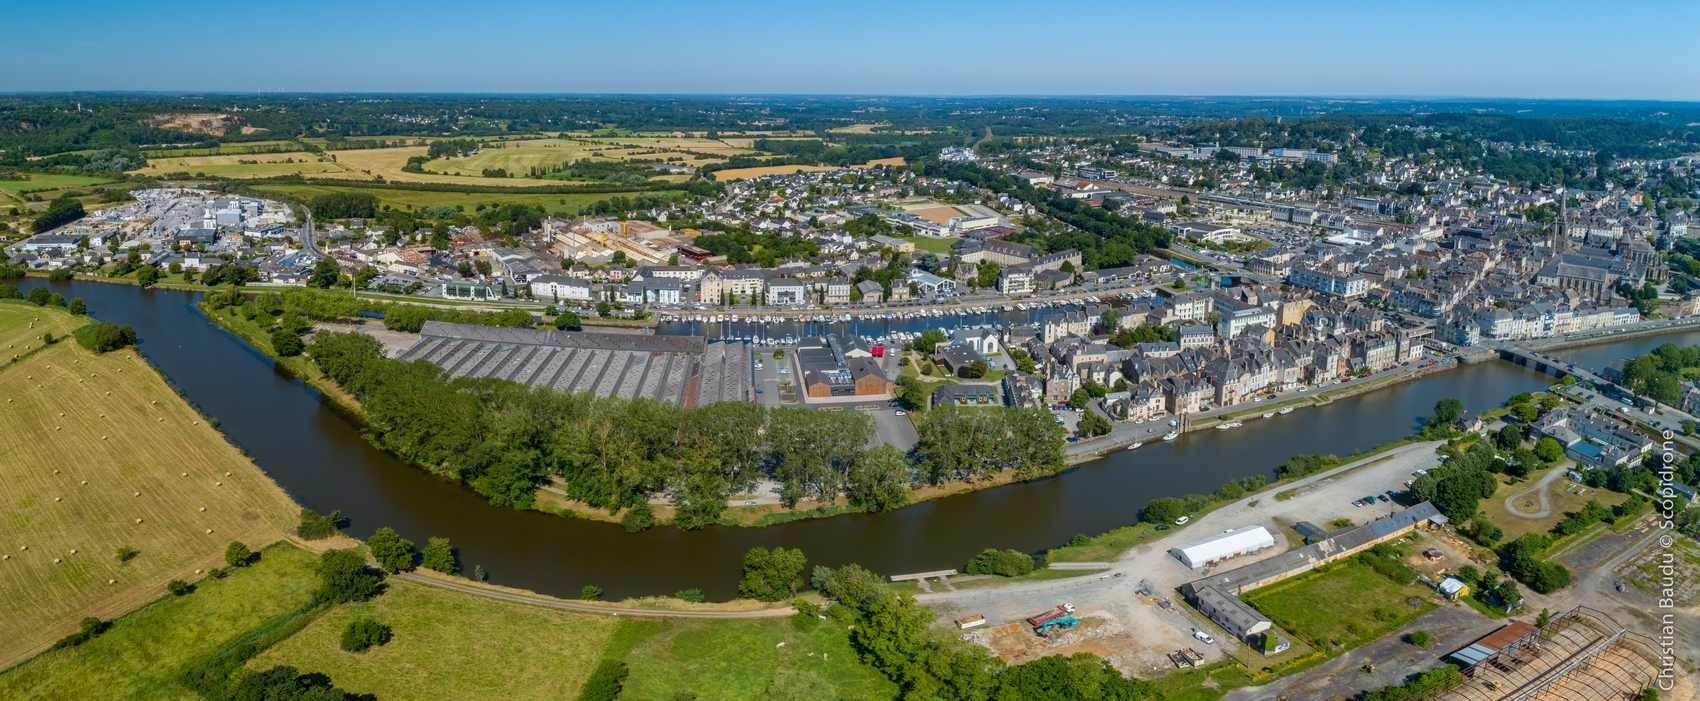 vue aérienne des quartiers portuaires de Redon et Saint-Nicolas-de-Redon